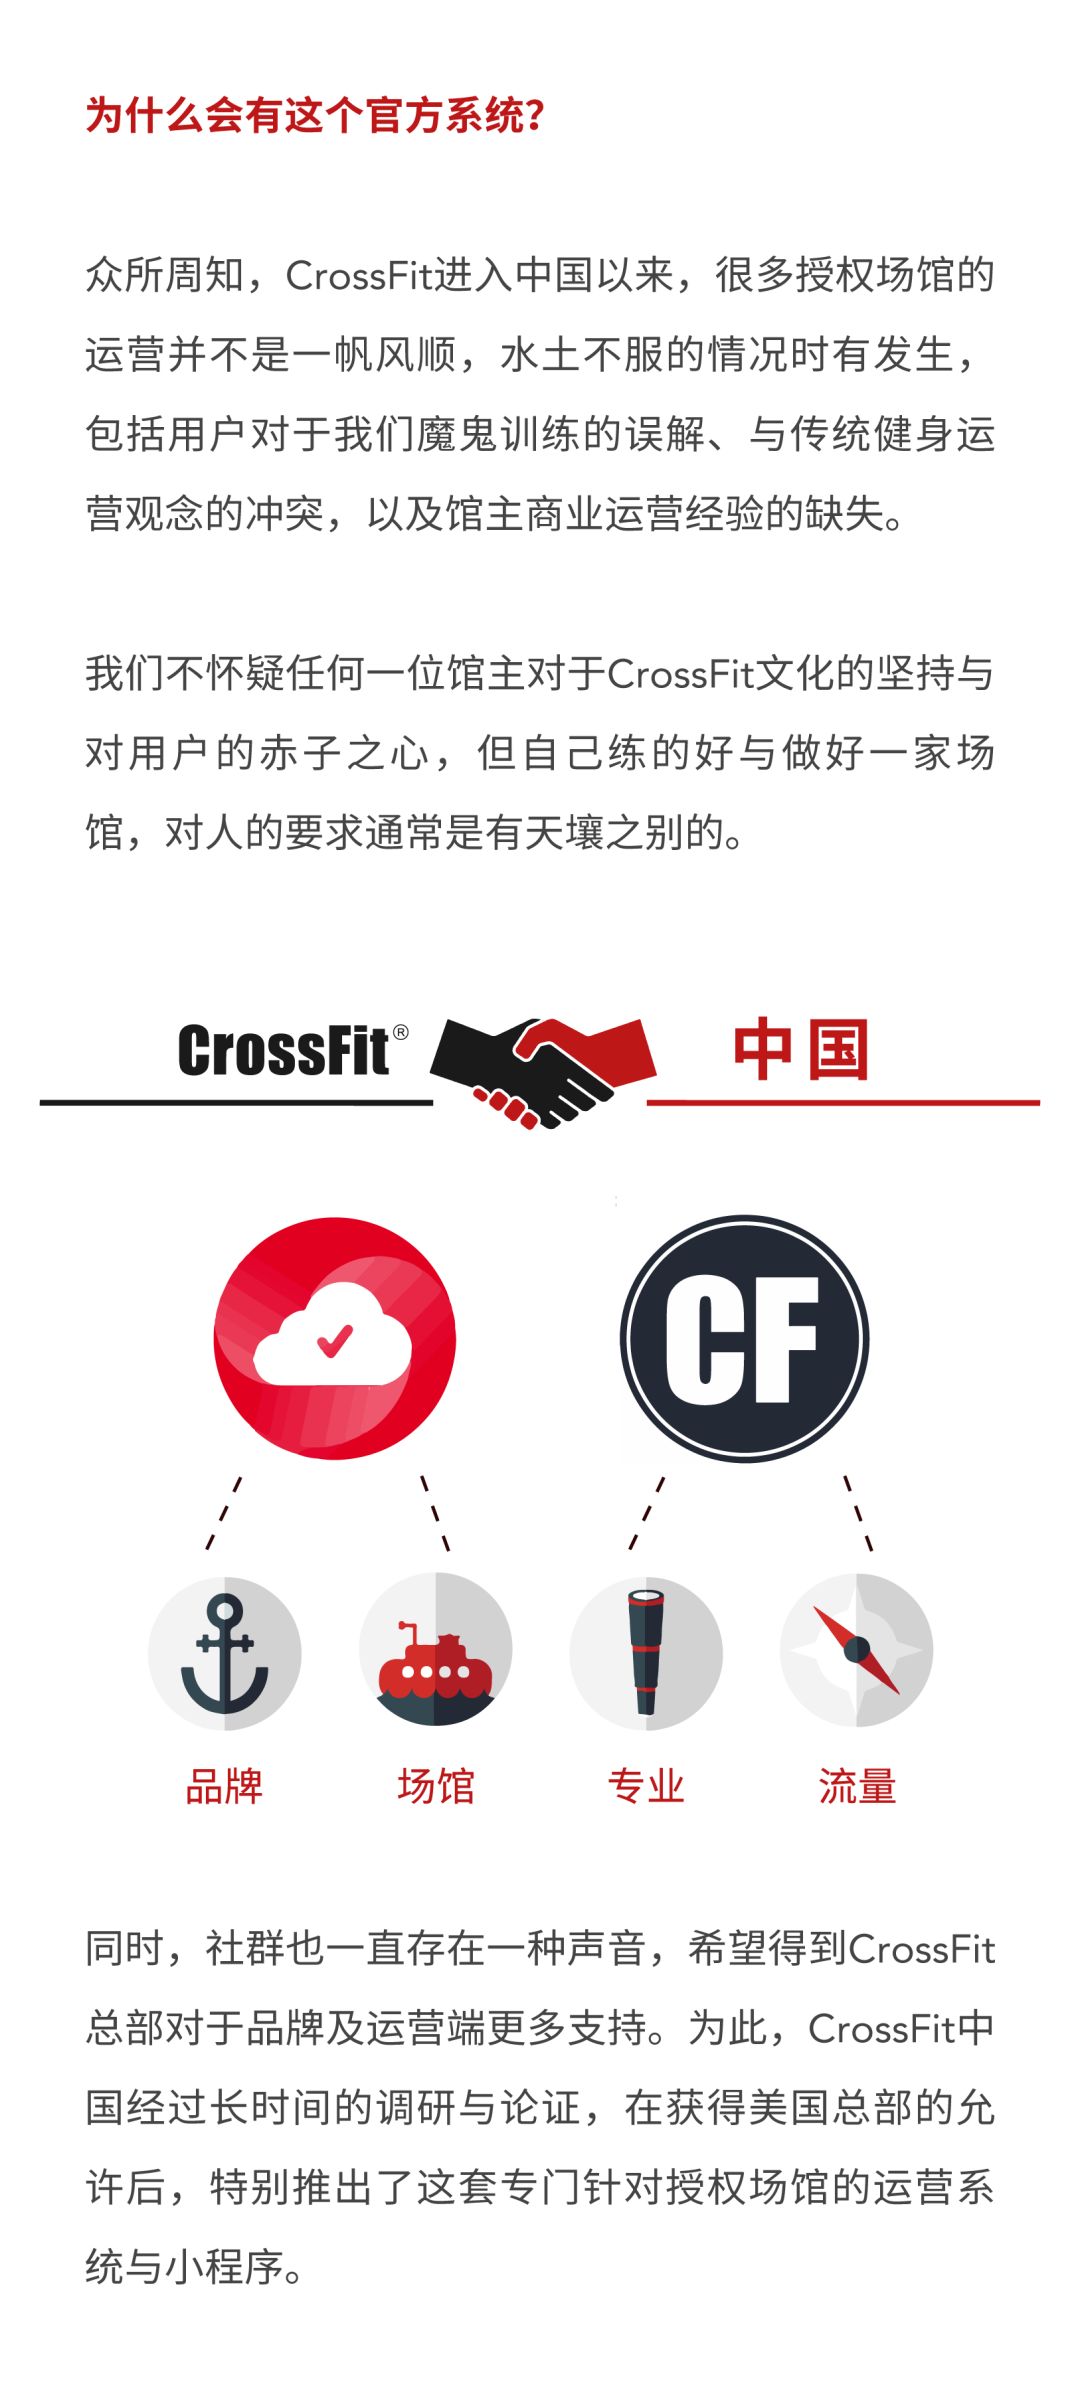 为什么我们要使用CrossFit官方系统